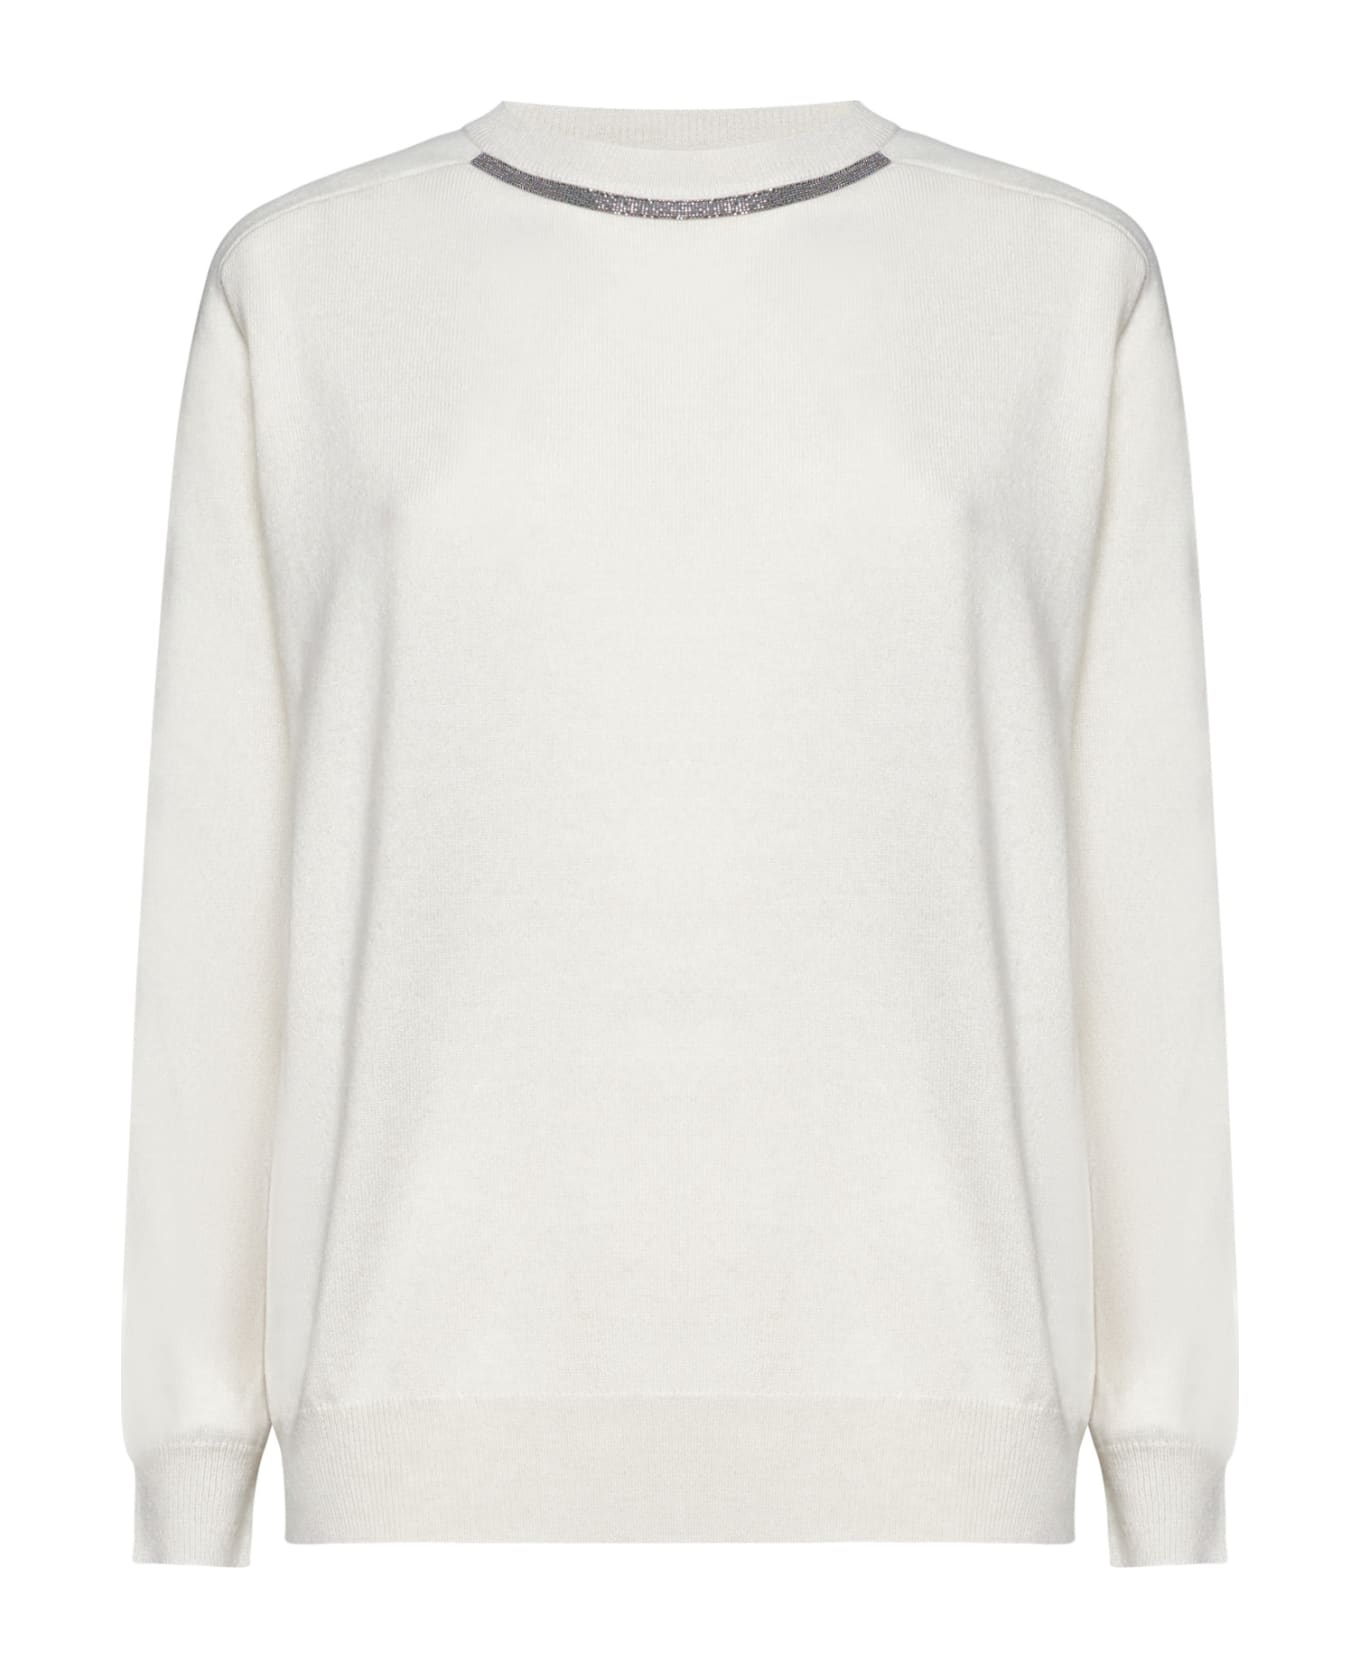 Brunello Cucinelli Sweater - White フリース